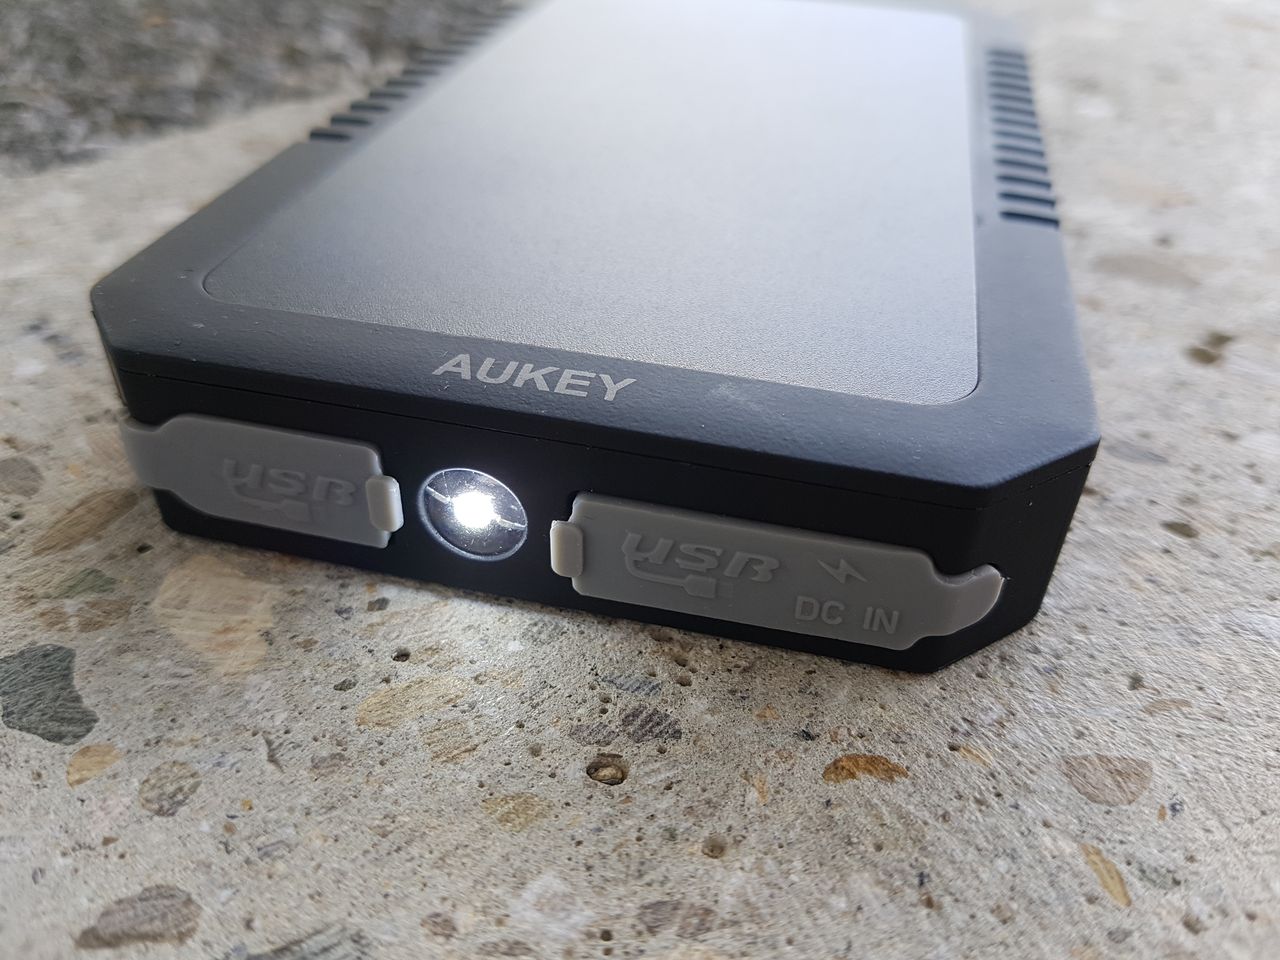 Caractéristiques de la batterie externe Aukey